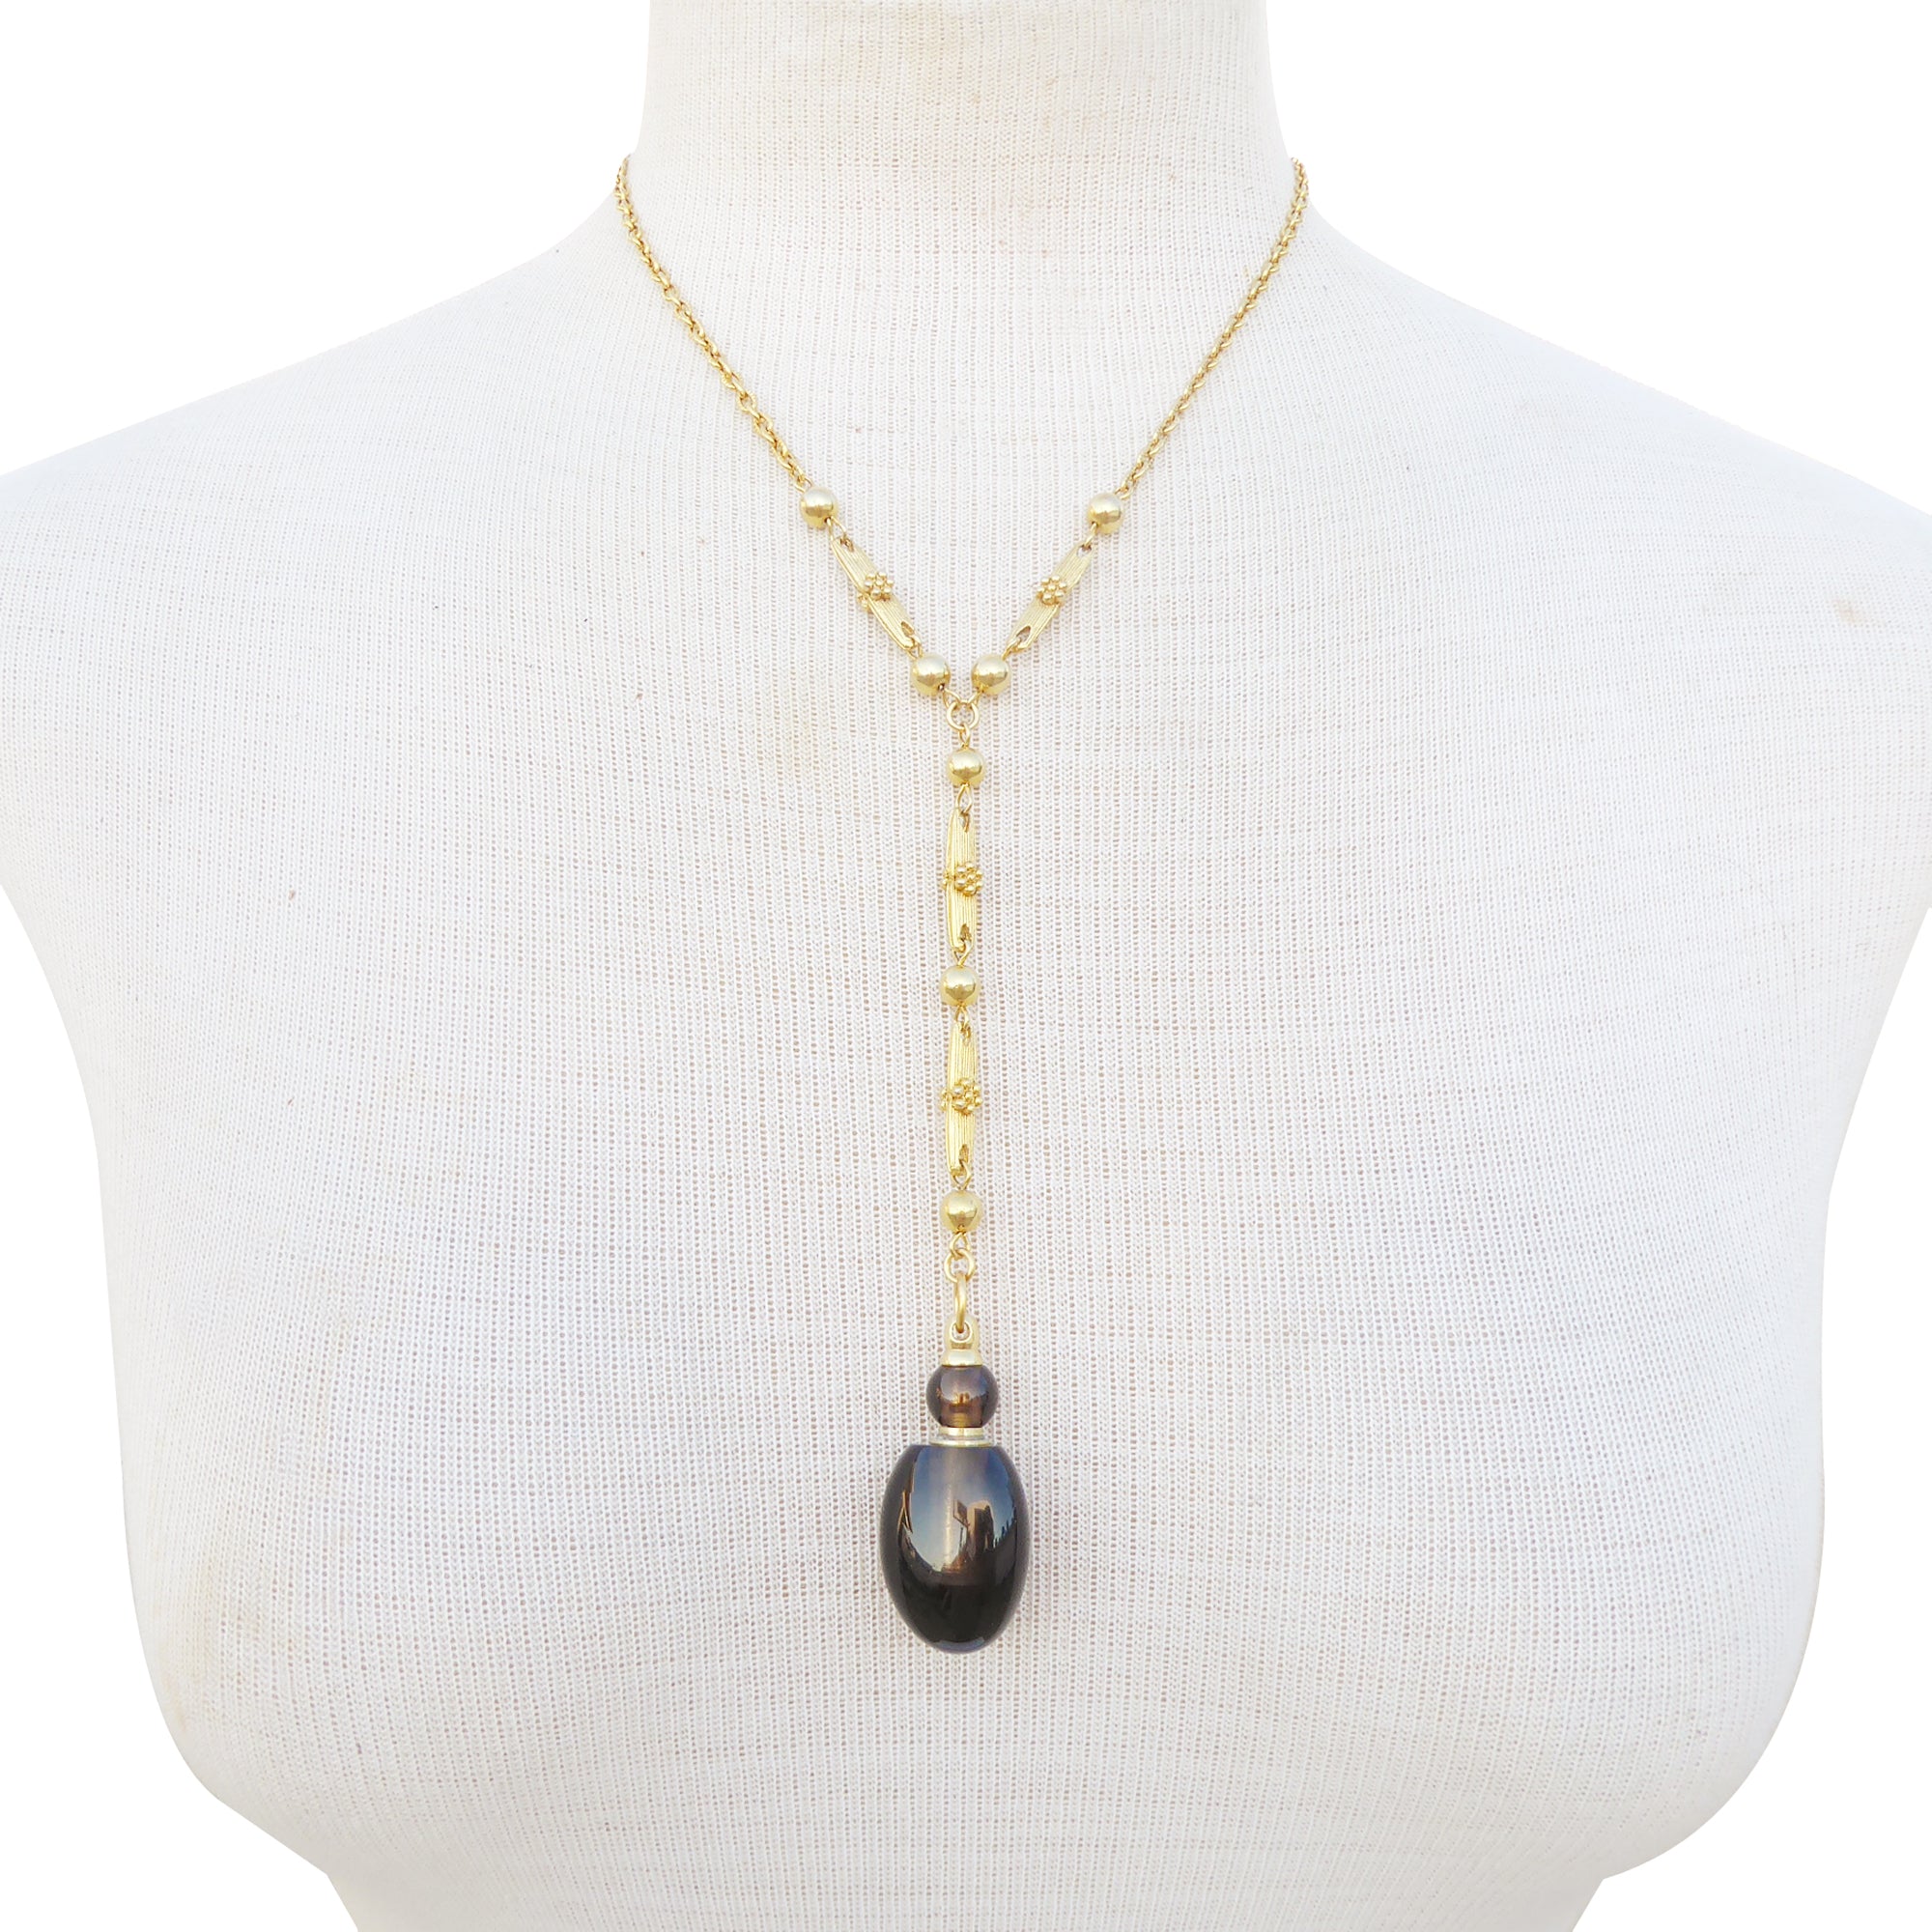 Smoky quartz vial necklace